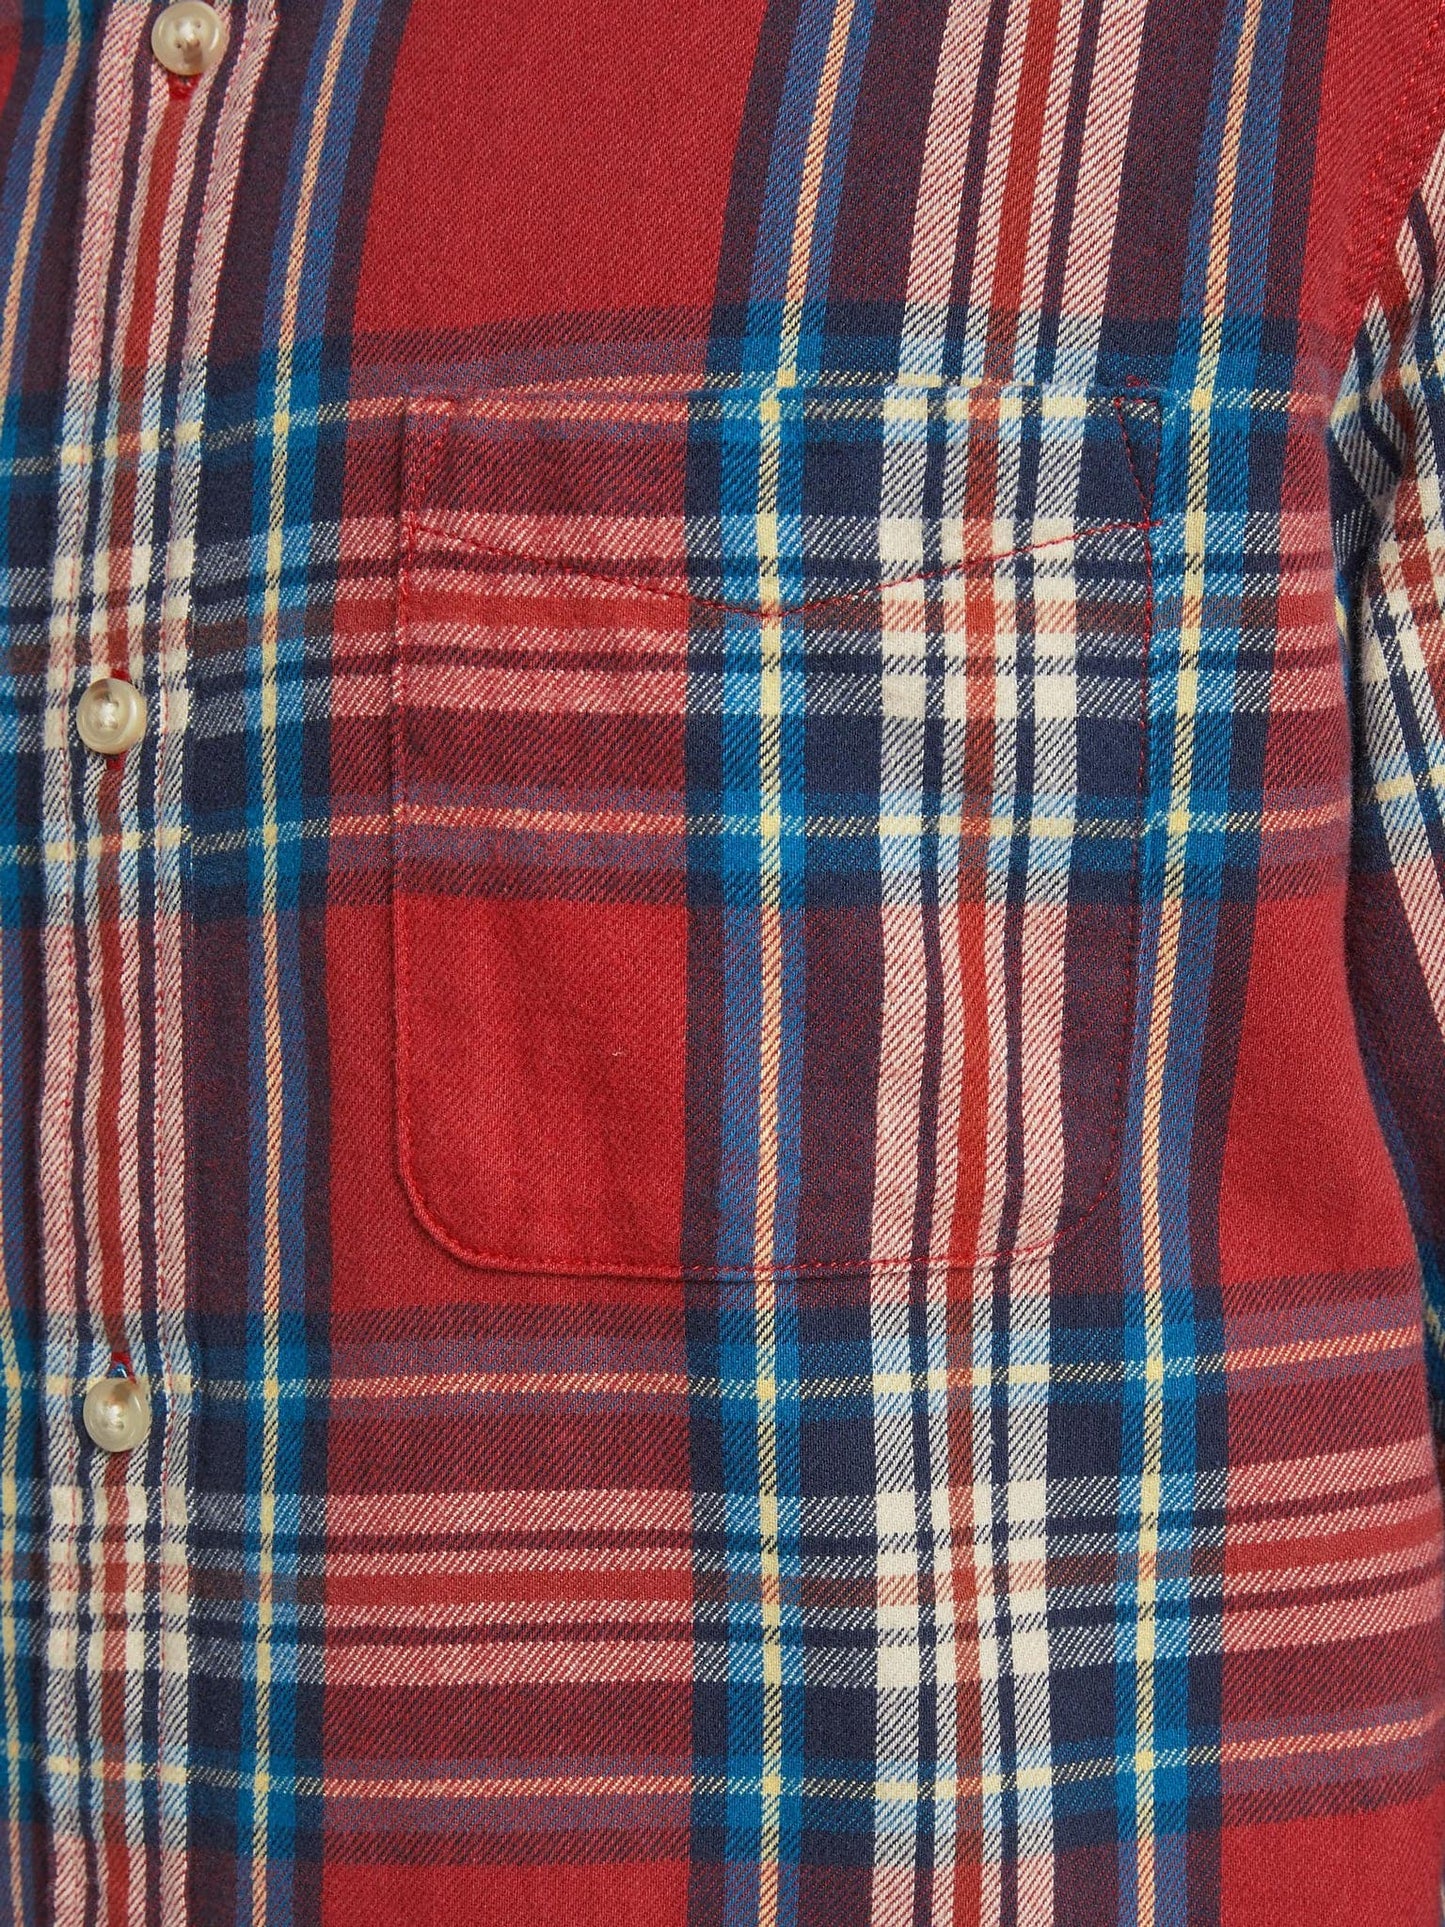 Ανδρικό πουκάμισο καρό φανέλα JPRBLUMIKE CHECK SHIRT LS ONE POCKET 12180388 | 12180388